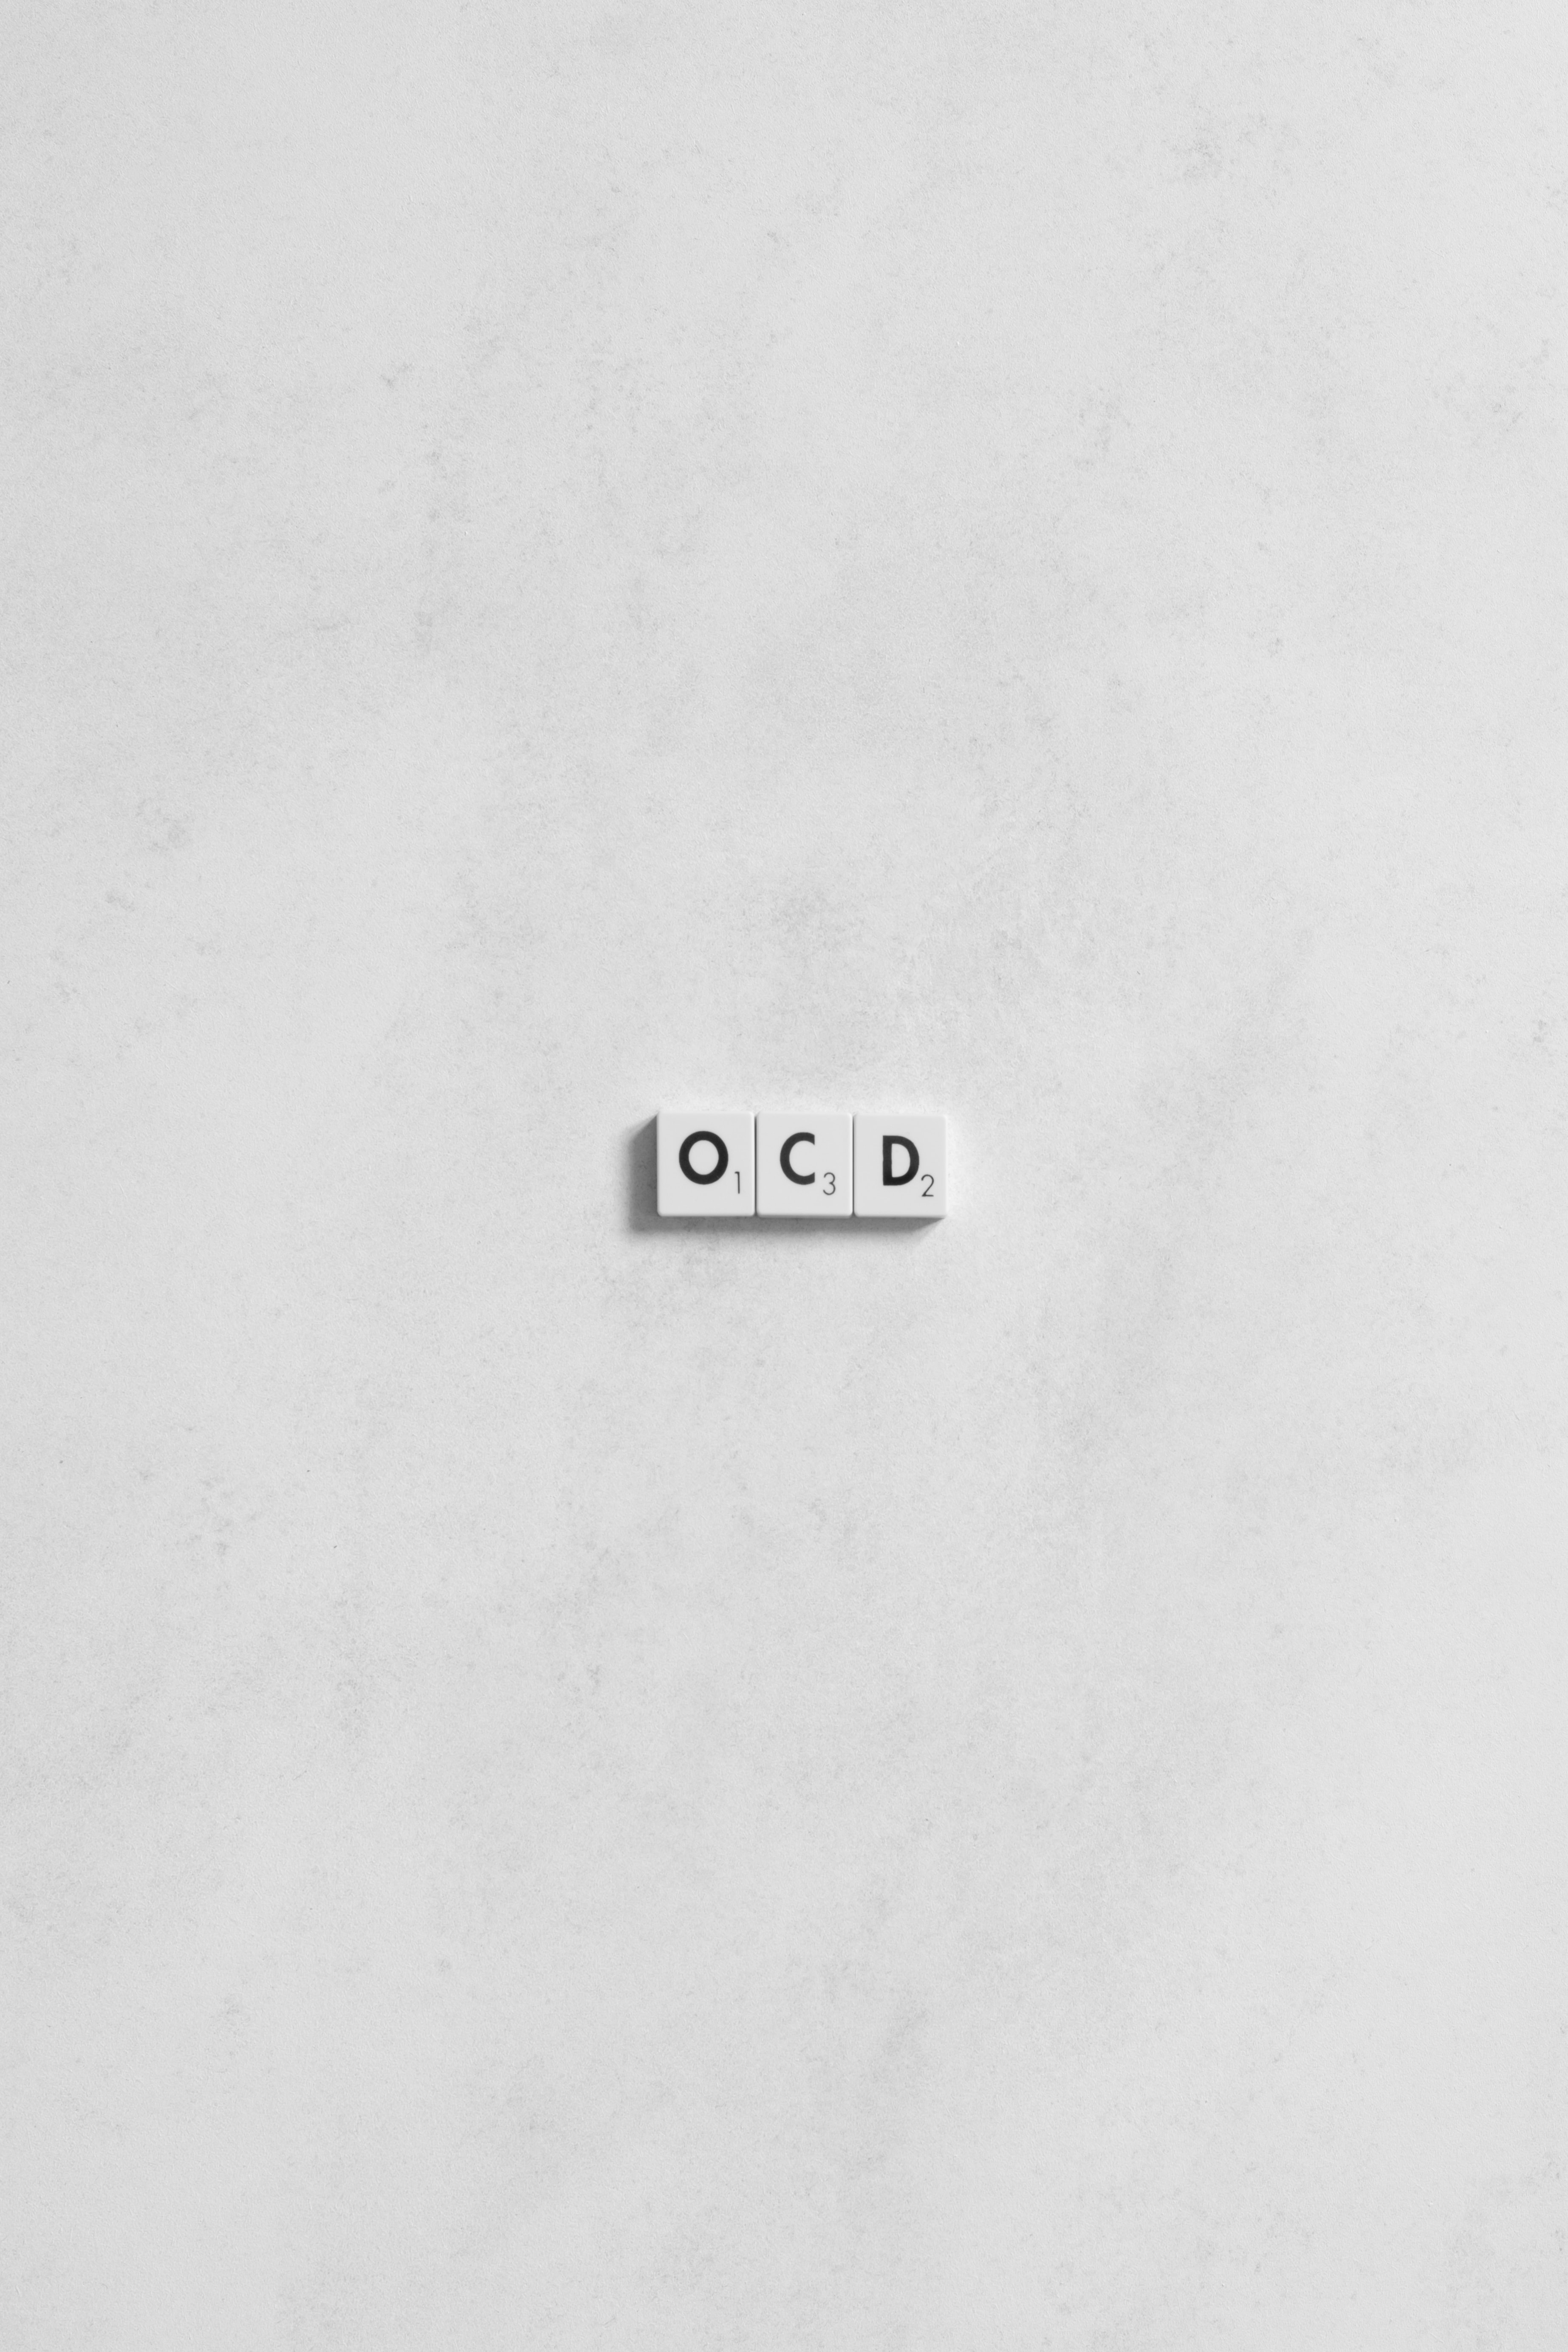 강박장애를 뜻하는 OCD